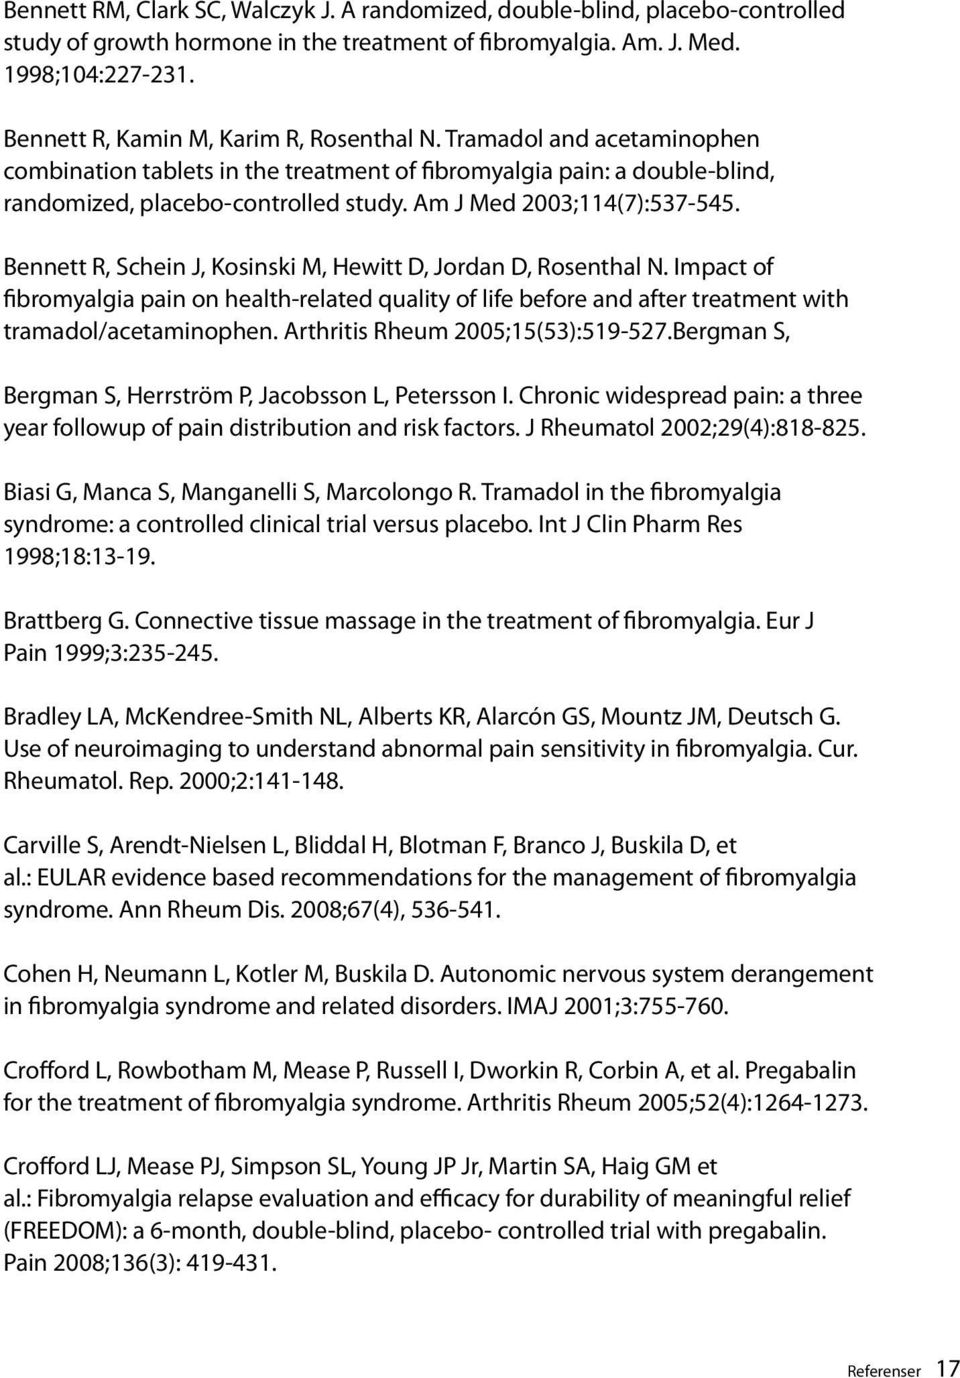 Am J Med 2003;114(7):537-545. Bennett R, Schein J, Kosinski M, Hewitt D, Jordan D, Rosenthal N.